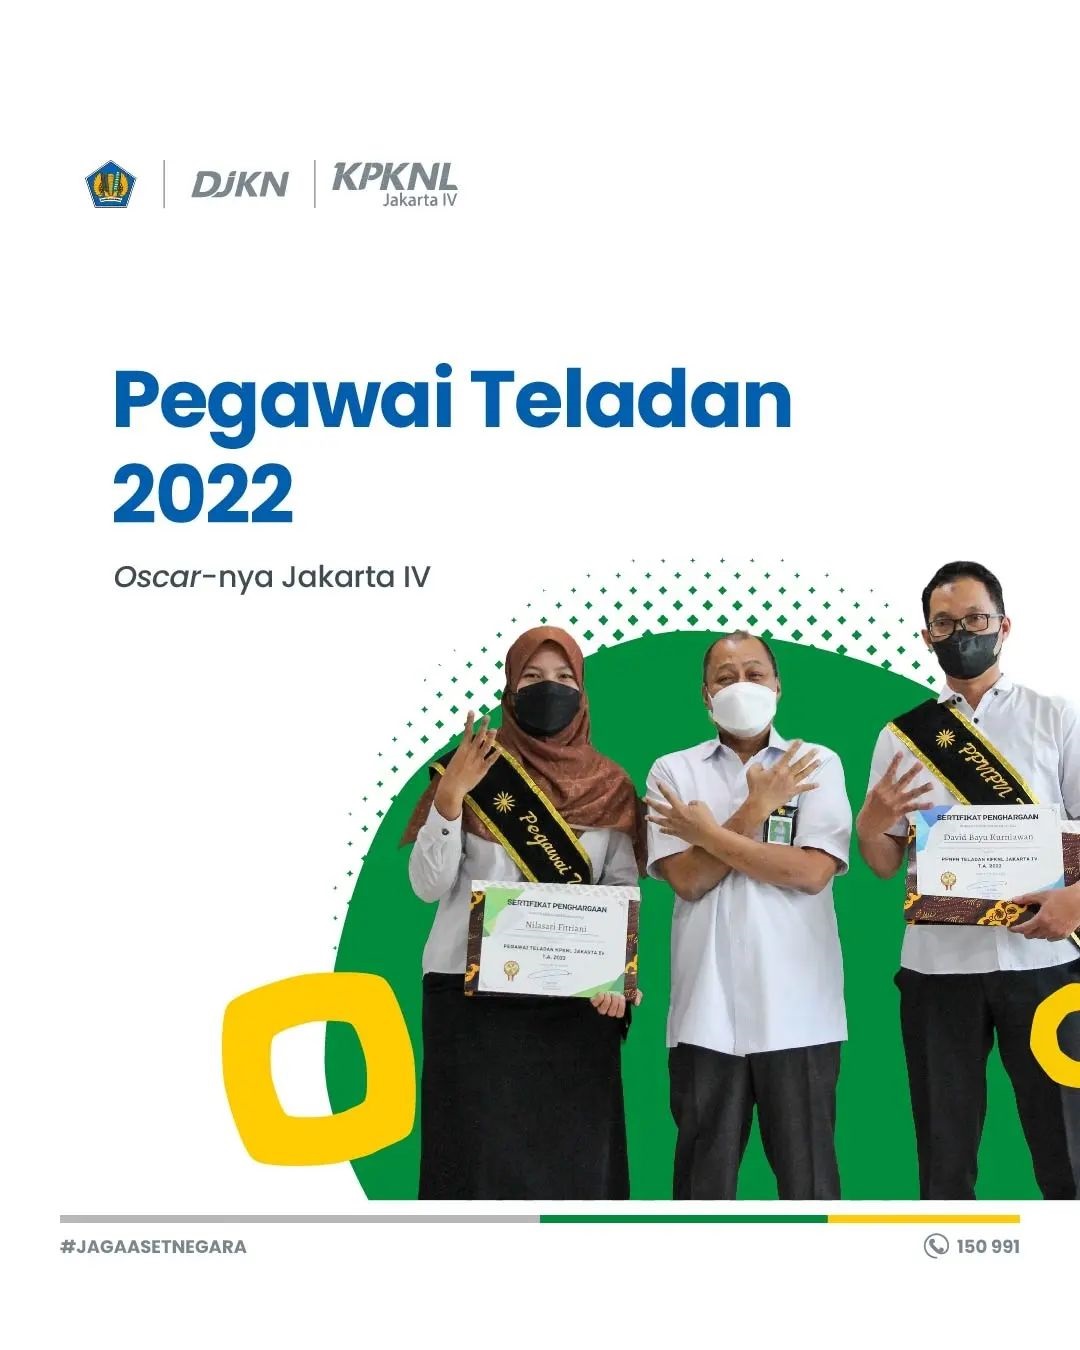 Pemilihan Pegawai Teladan KPKNL Jakarta IV tahun 2022